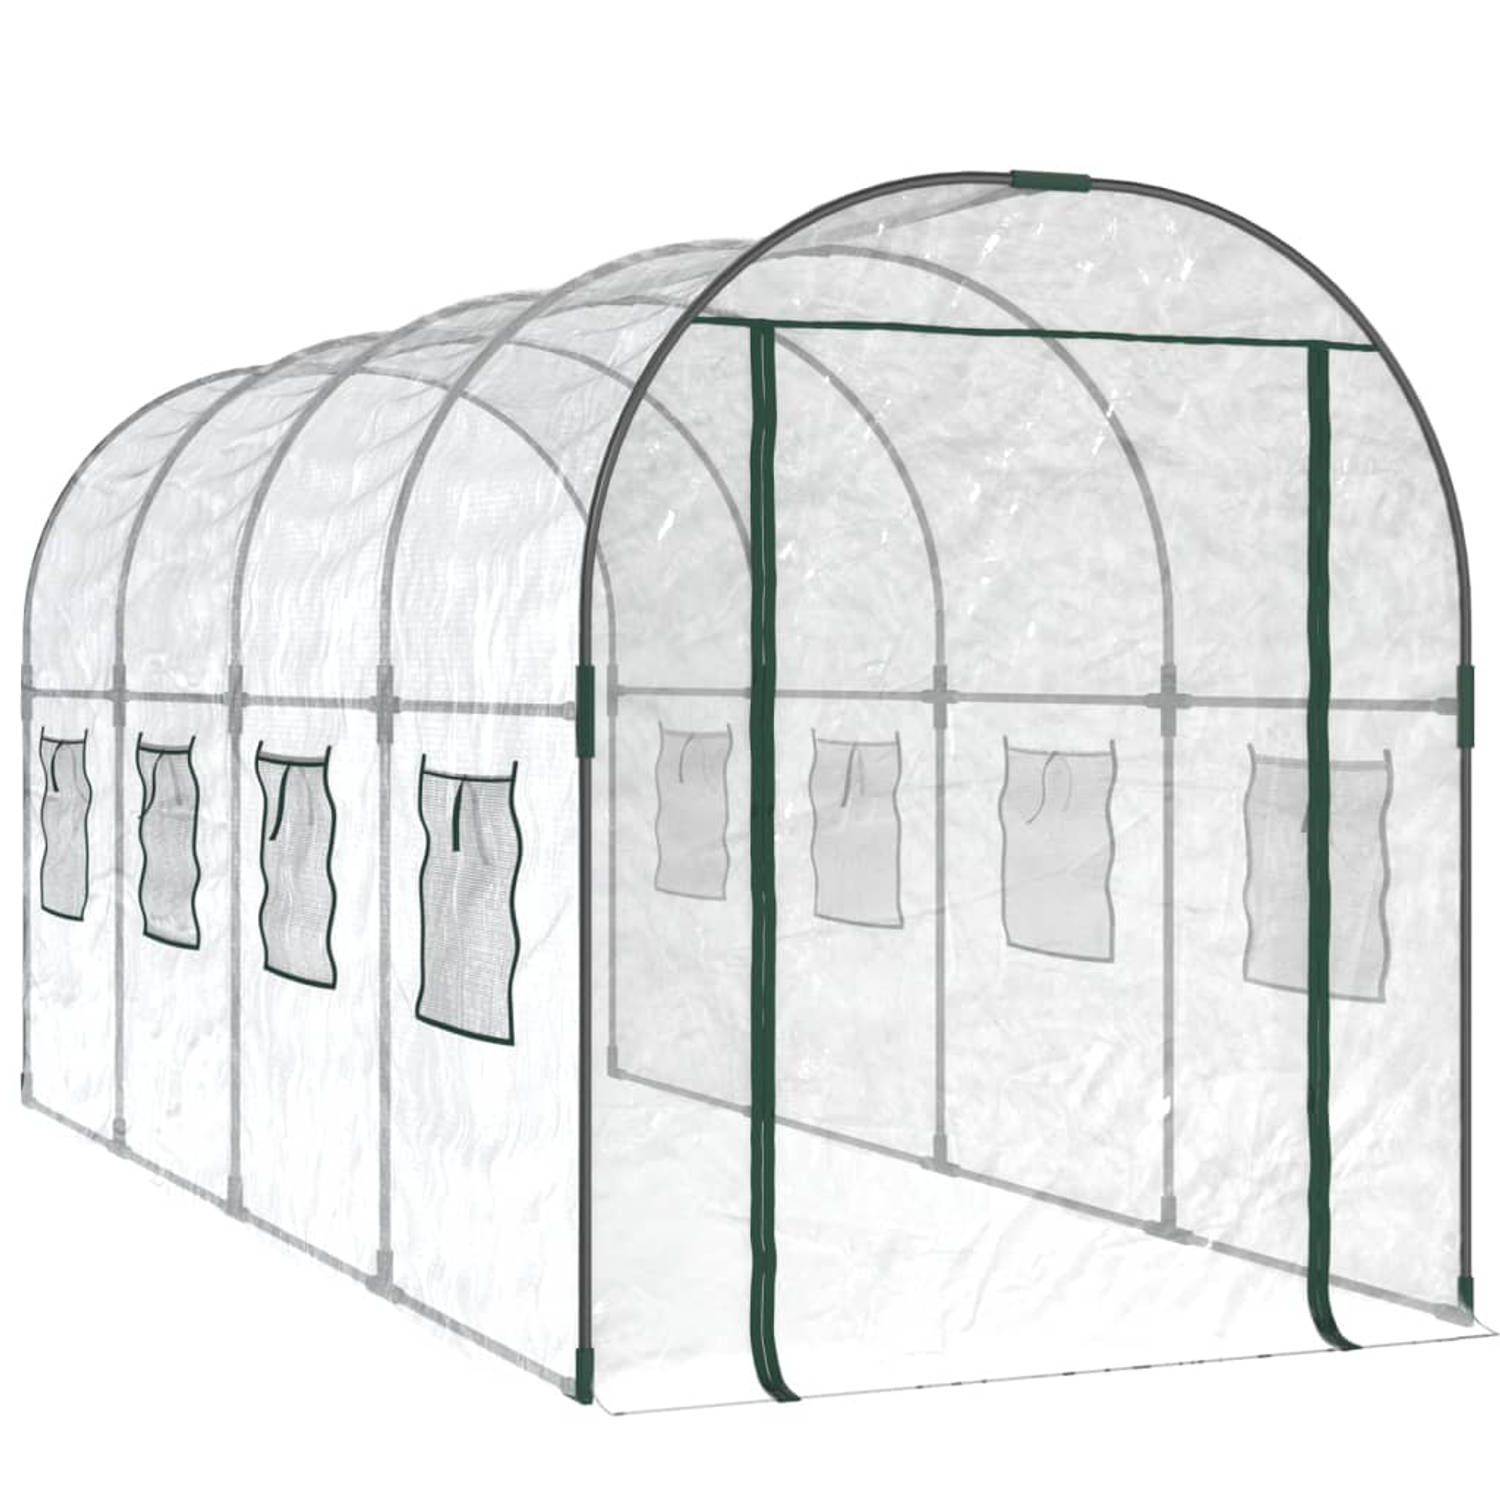 The Living Store Tuinkas - Grote kas 160 x 400 x 190 cm - Stabiel frame - UV-bestendige afdekking - Praktische bescherming voor planten - Oprolbare ramen en voordeur - Handleiding